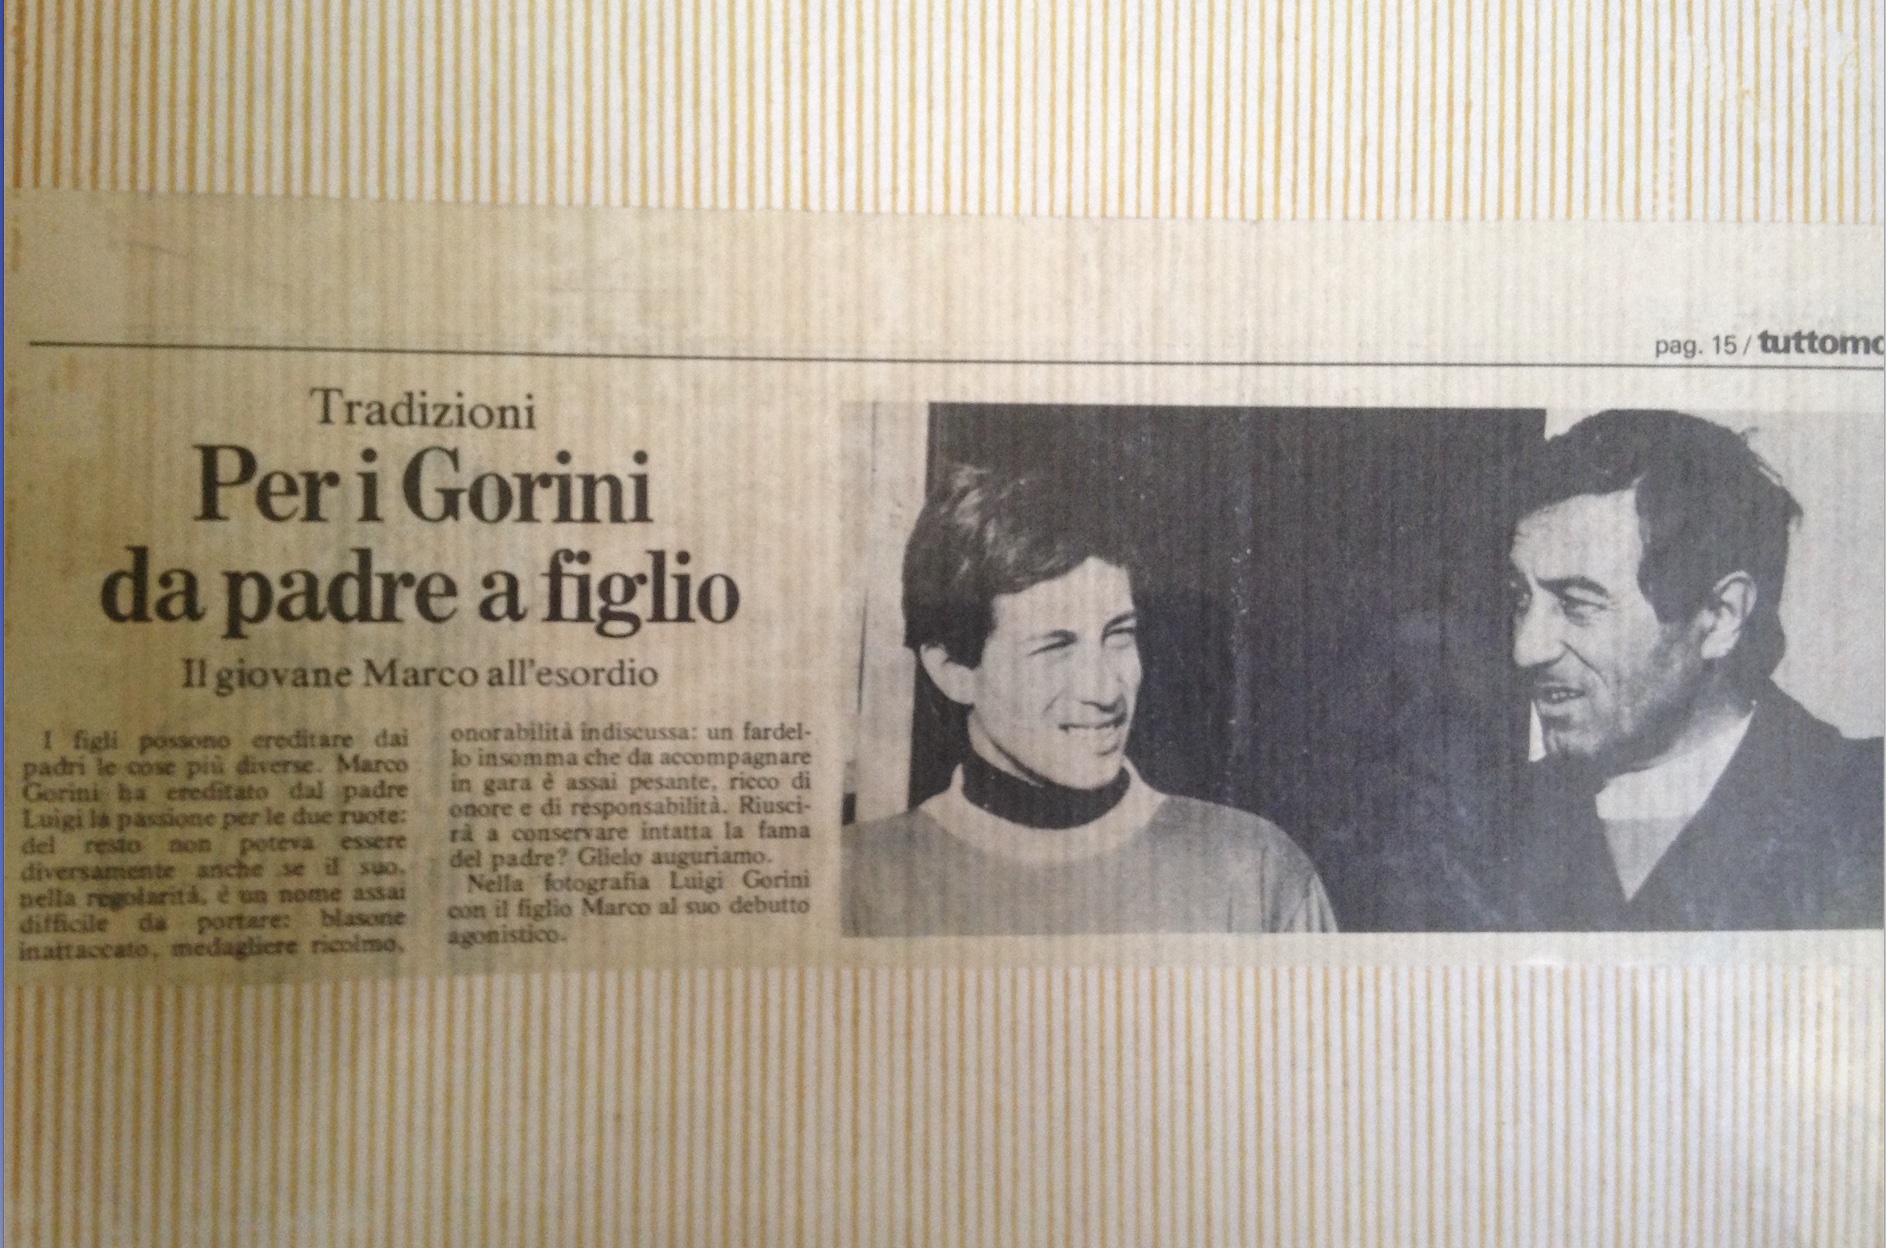 Articolo di giornale su Marco e Luigi Gorini